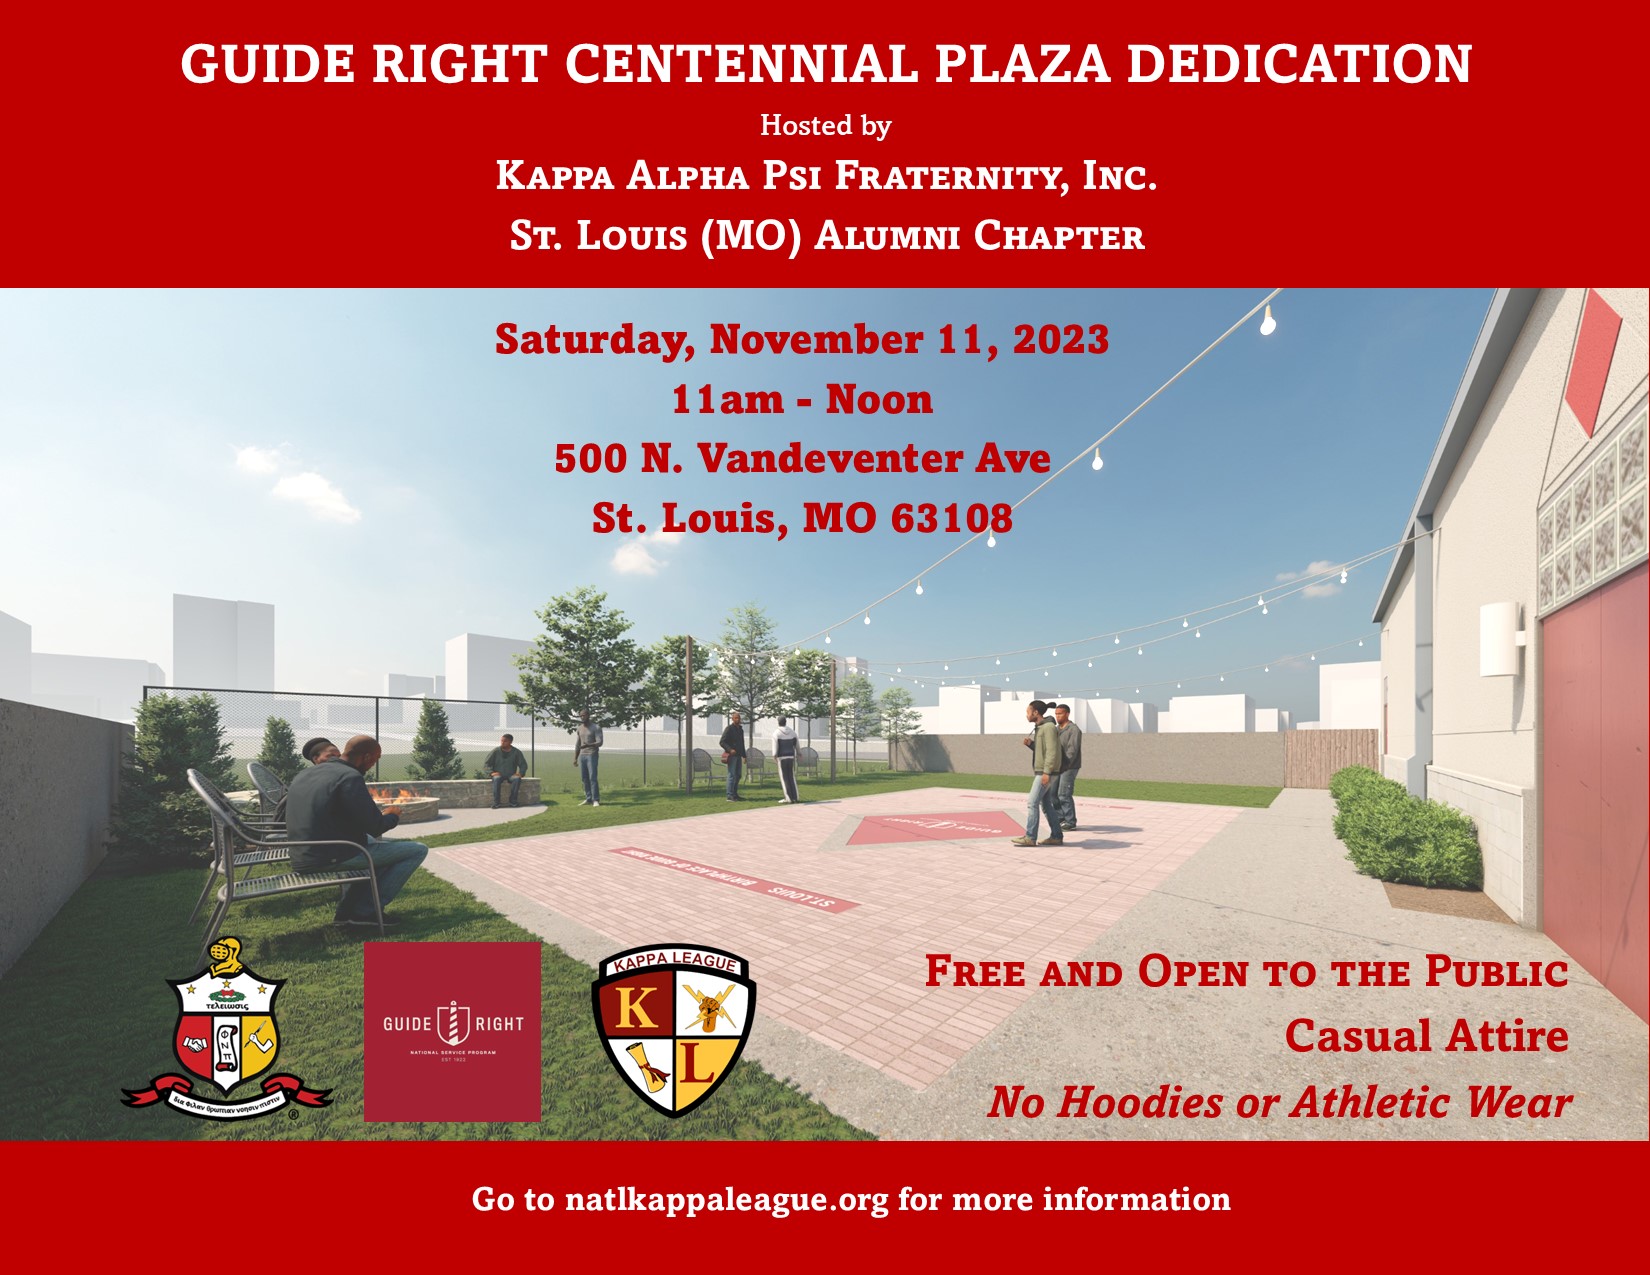 Guide Right Centennial Plaza Dedication Flyer